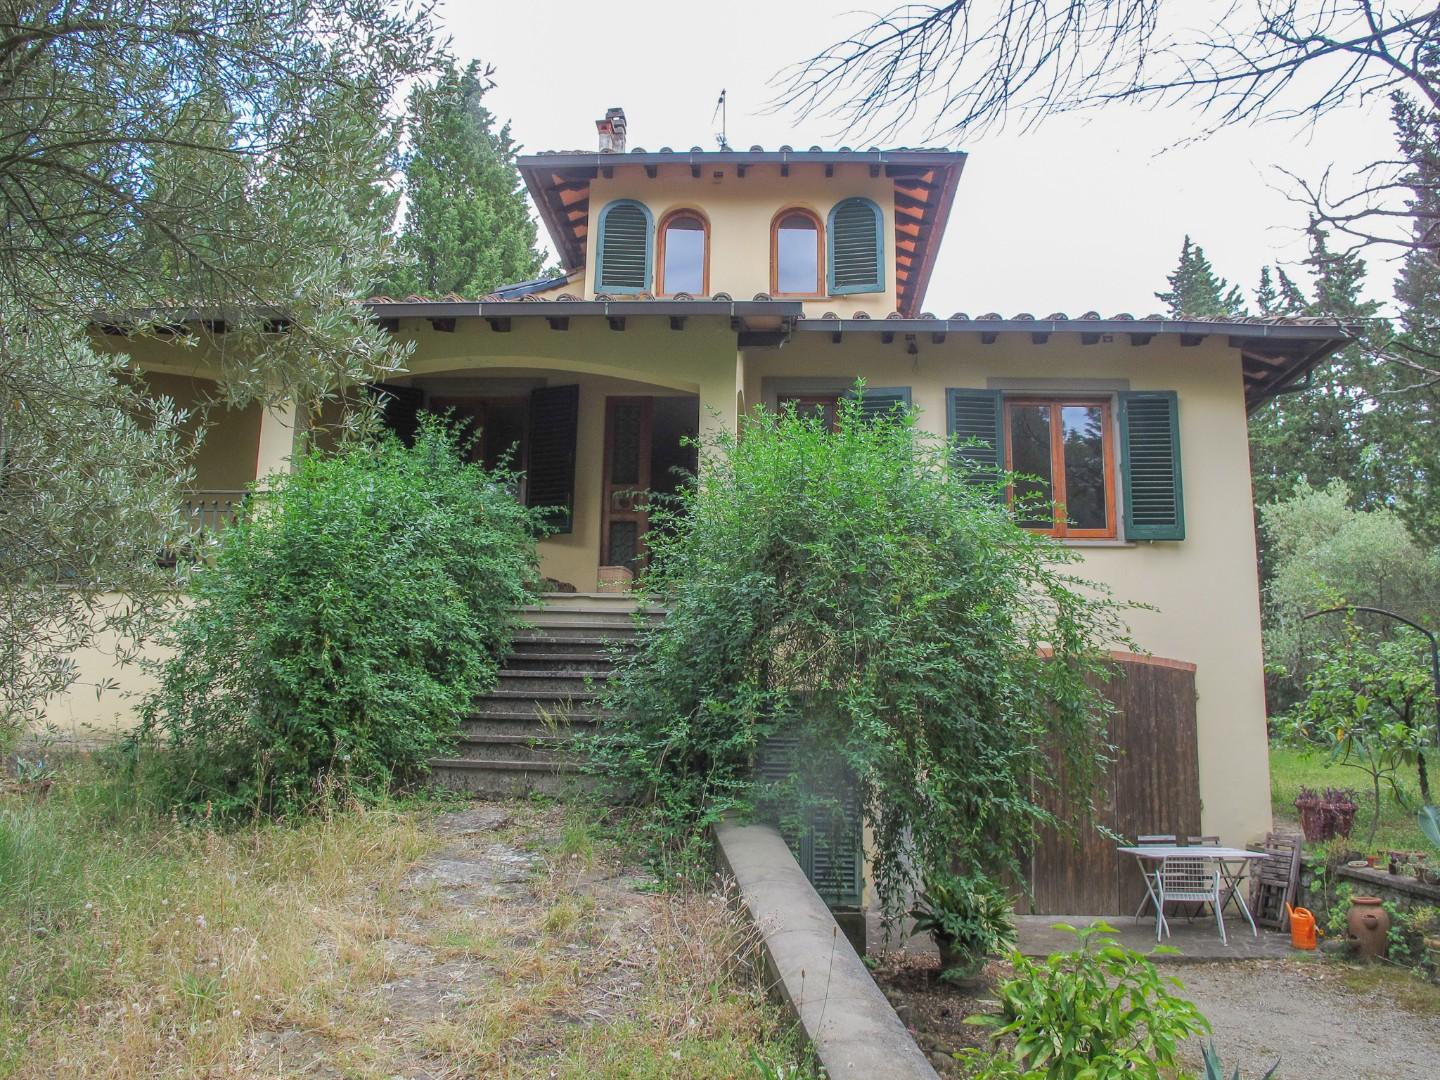 Villa singola in vendita a Empoli (FI)